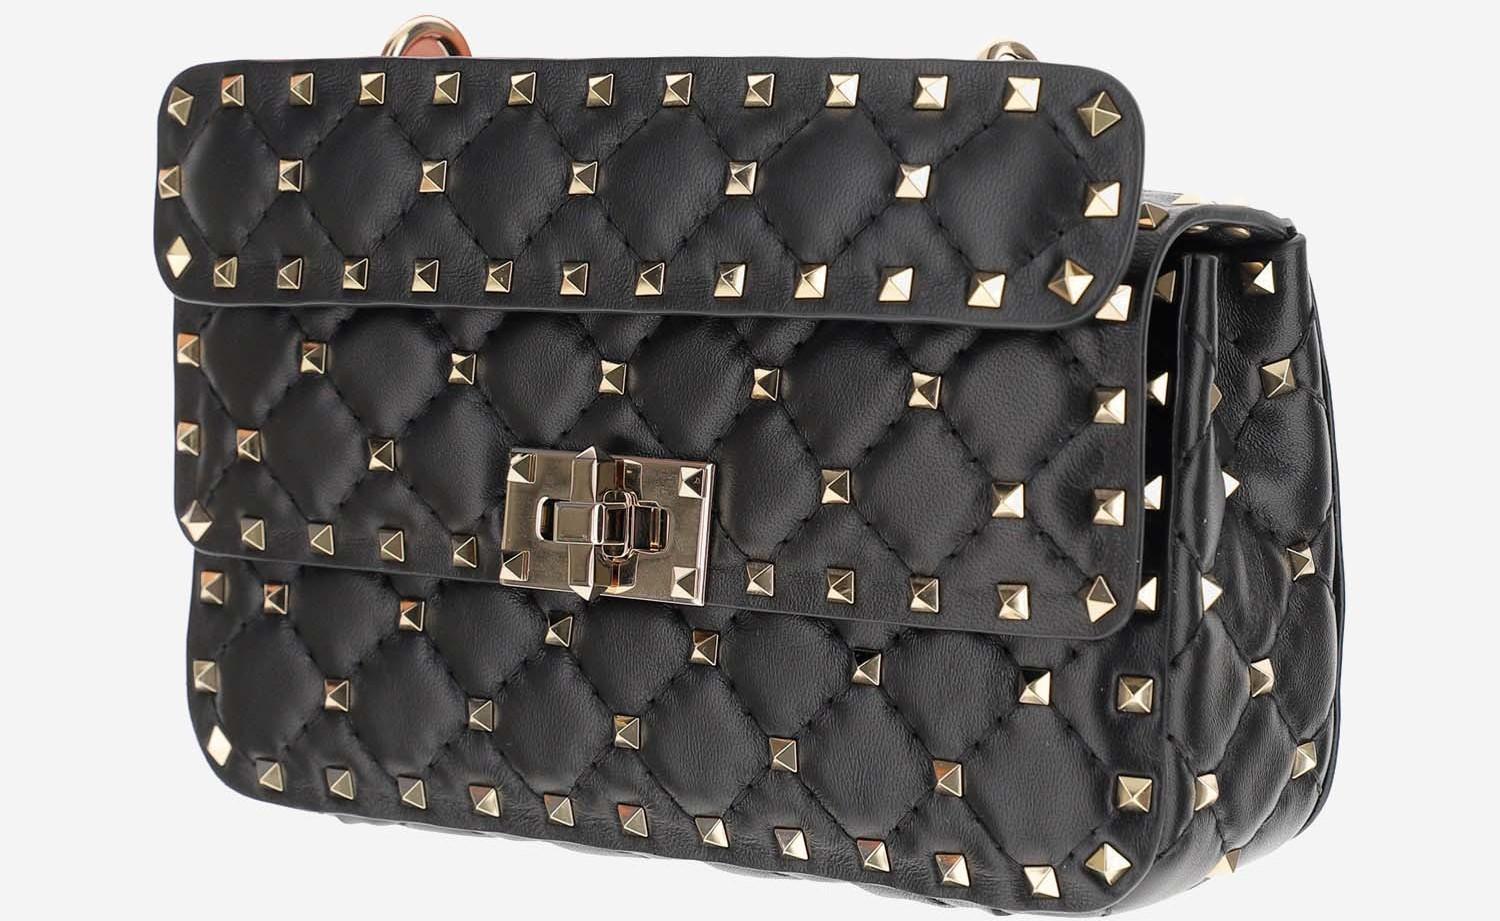 Rockstud spike leather handbag